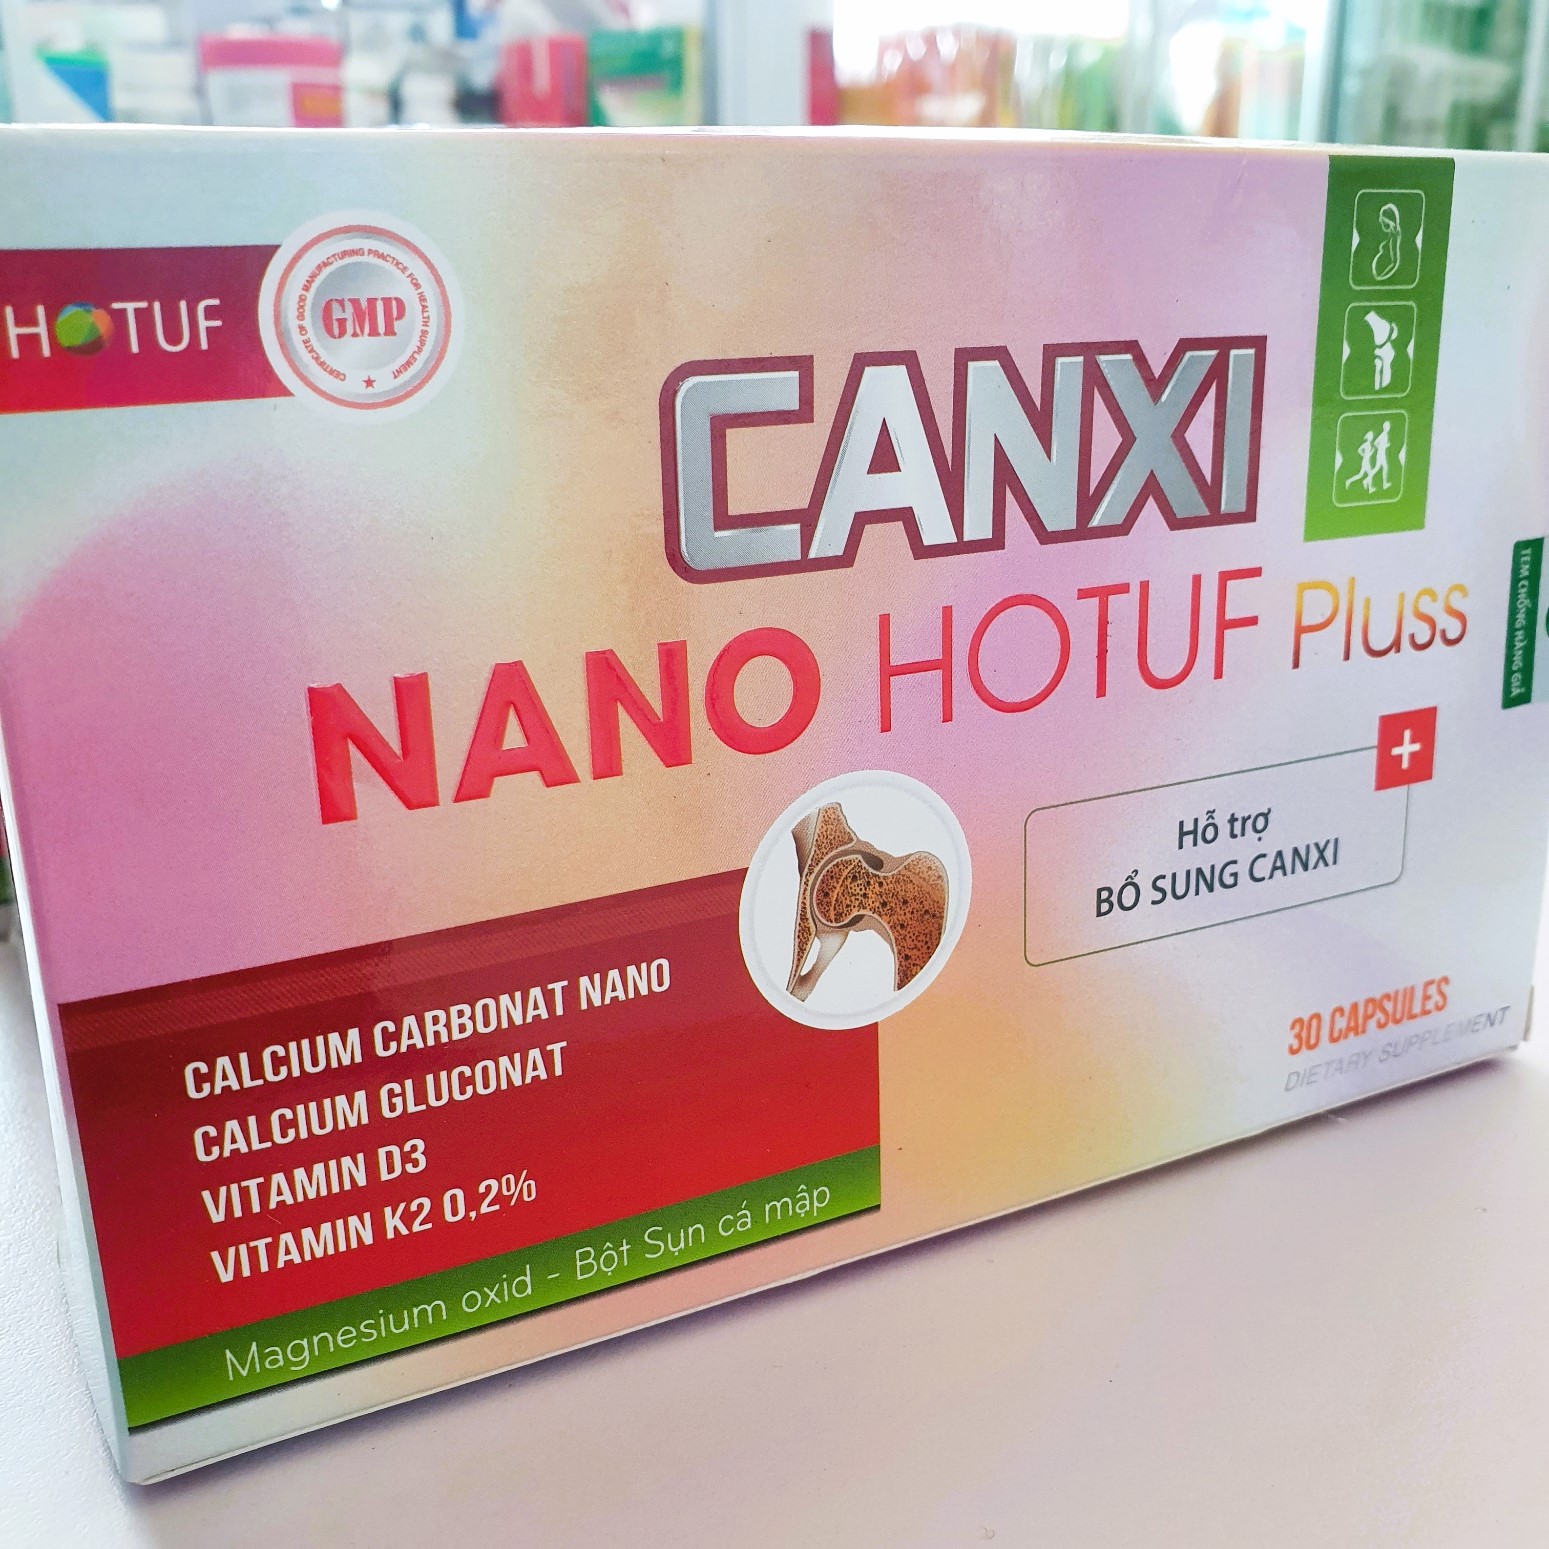 Canxi nano, vitamin D3+K2 giảm nguy cơ loãng xương, thiếu hụt canxi ; CANXI NANO HOTUF Pluss Hộp 30 viên